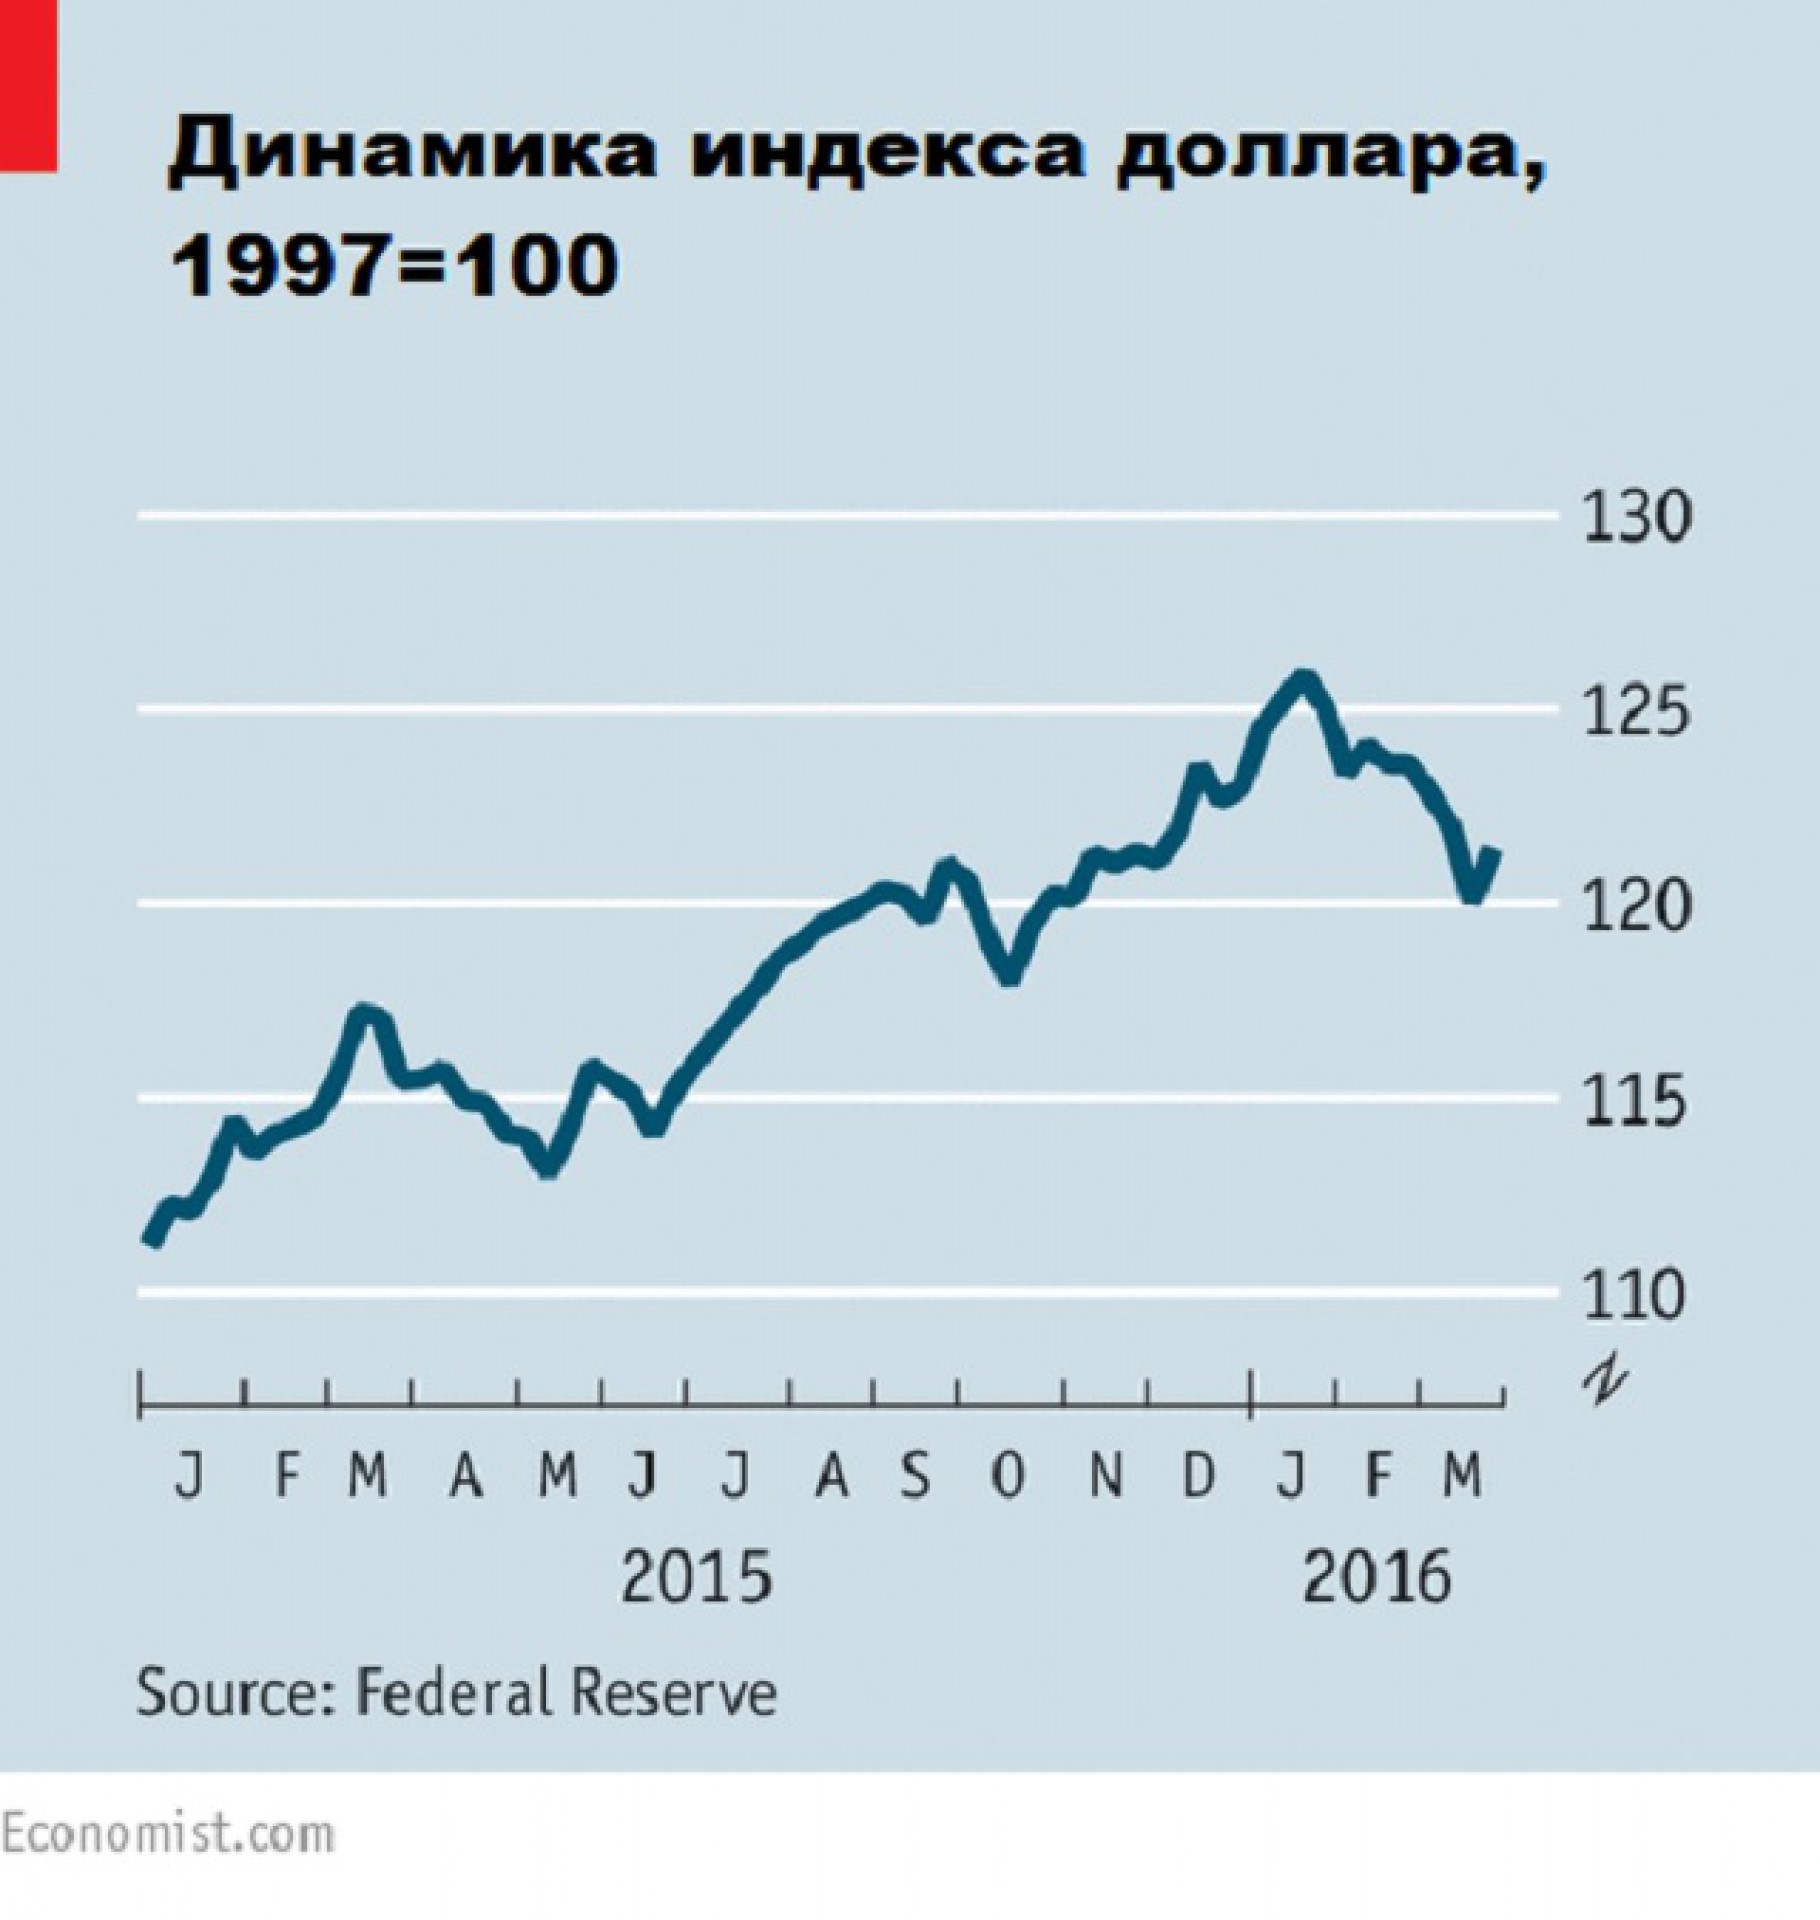 1997 долларов в рубли. Курс доллара в 1997. Курс доллара в 1997 году. Доллар в 1997 году в рублях. Динамика индексов и валюты.